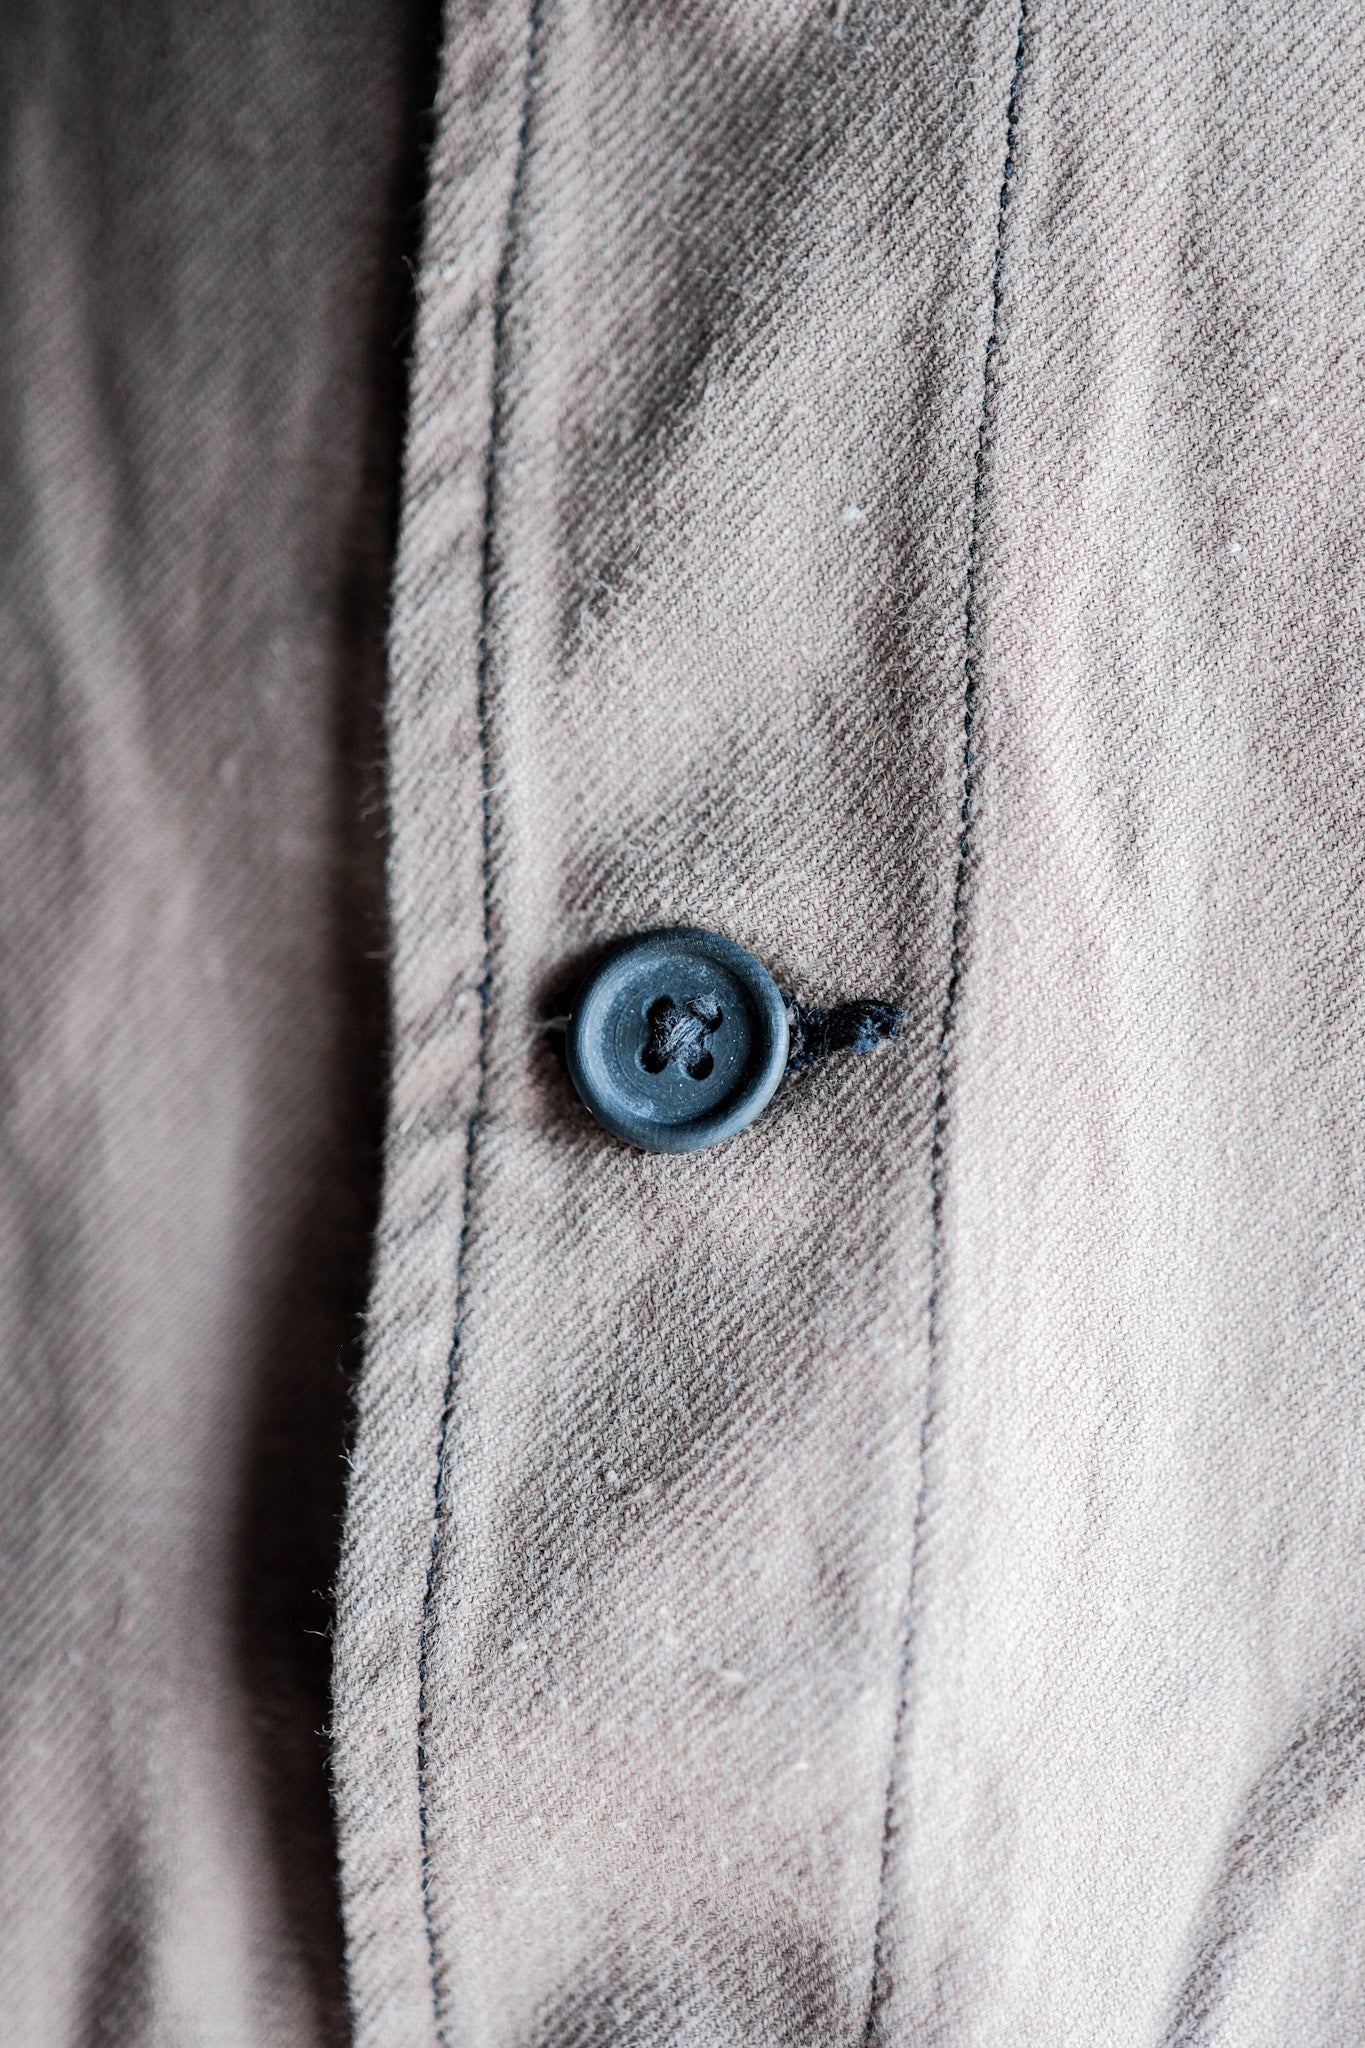 [〜40年代]法國復古棕色棉質斜紋斜紋衣外套